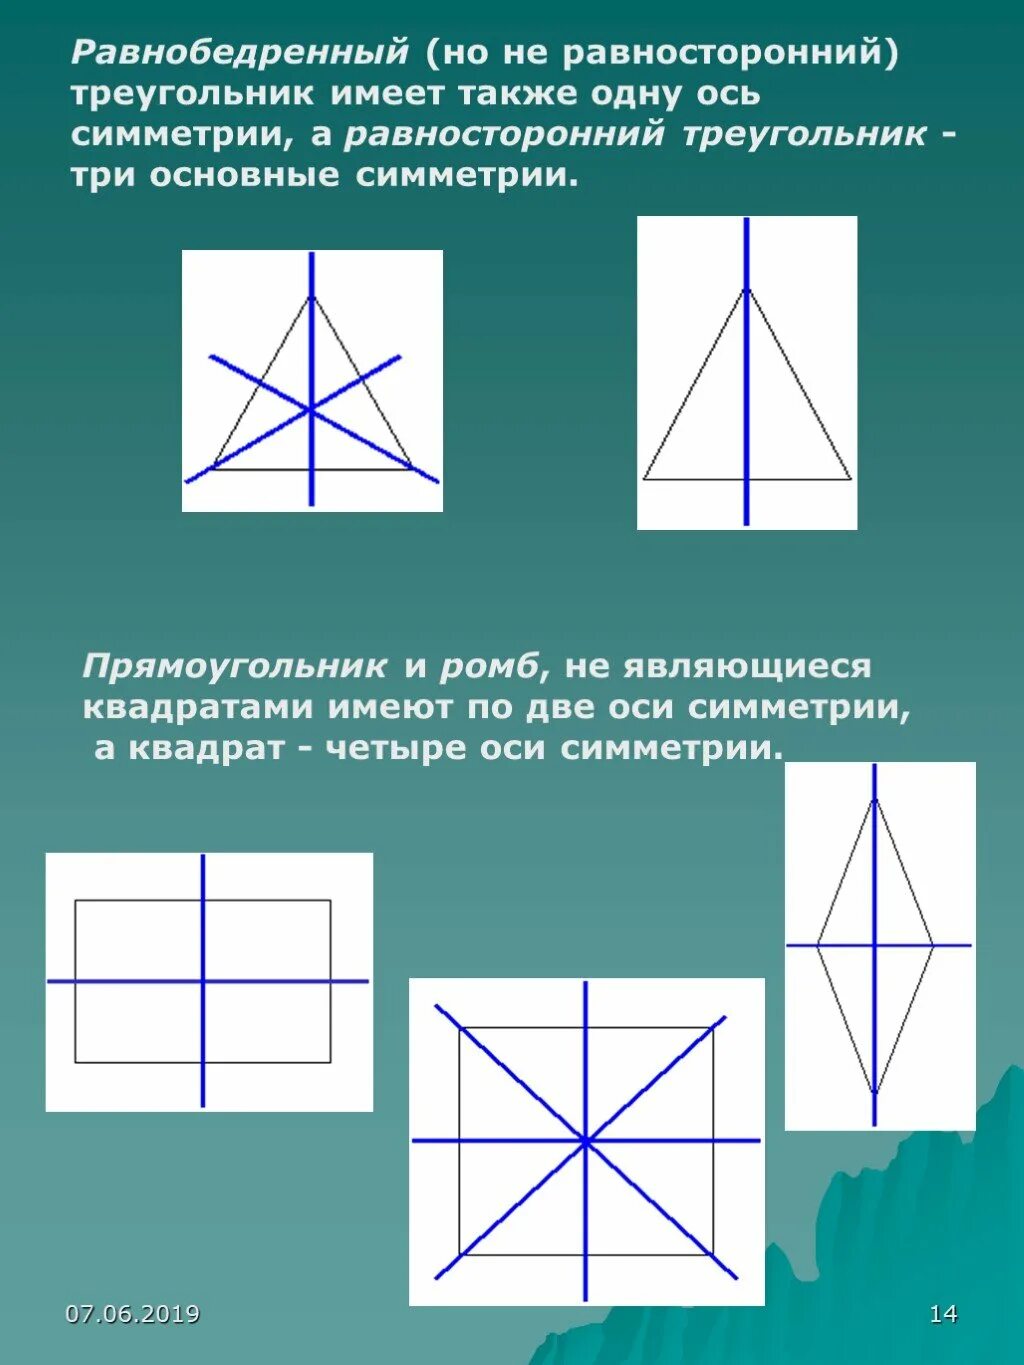 Оси симметрии квадрата. ОСТ симетрии треугольника. ОСБ симметрии в треугольнике. ОСТ стмметрии у прямоугольник.